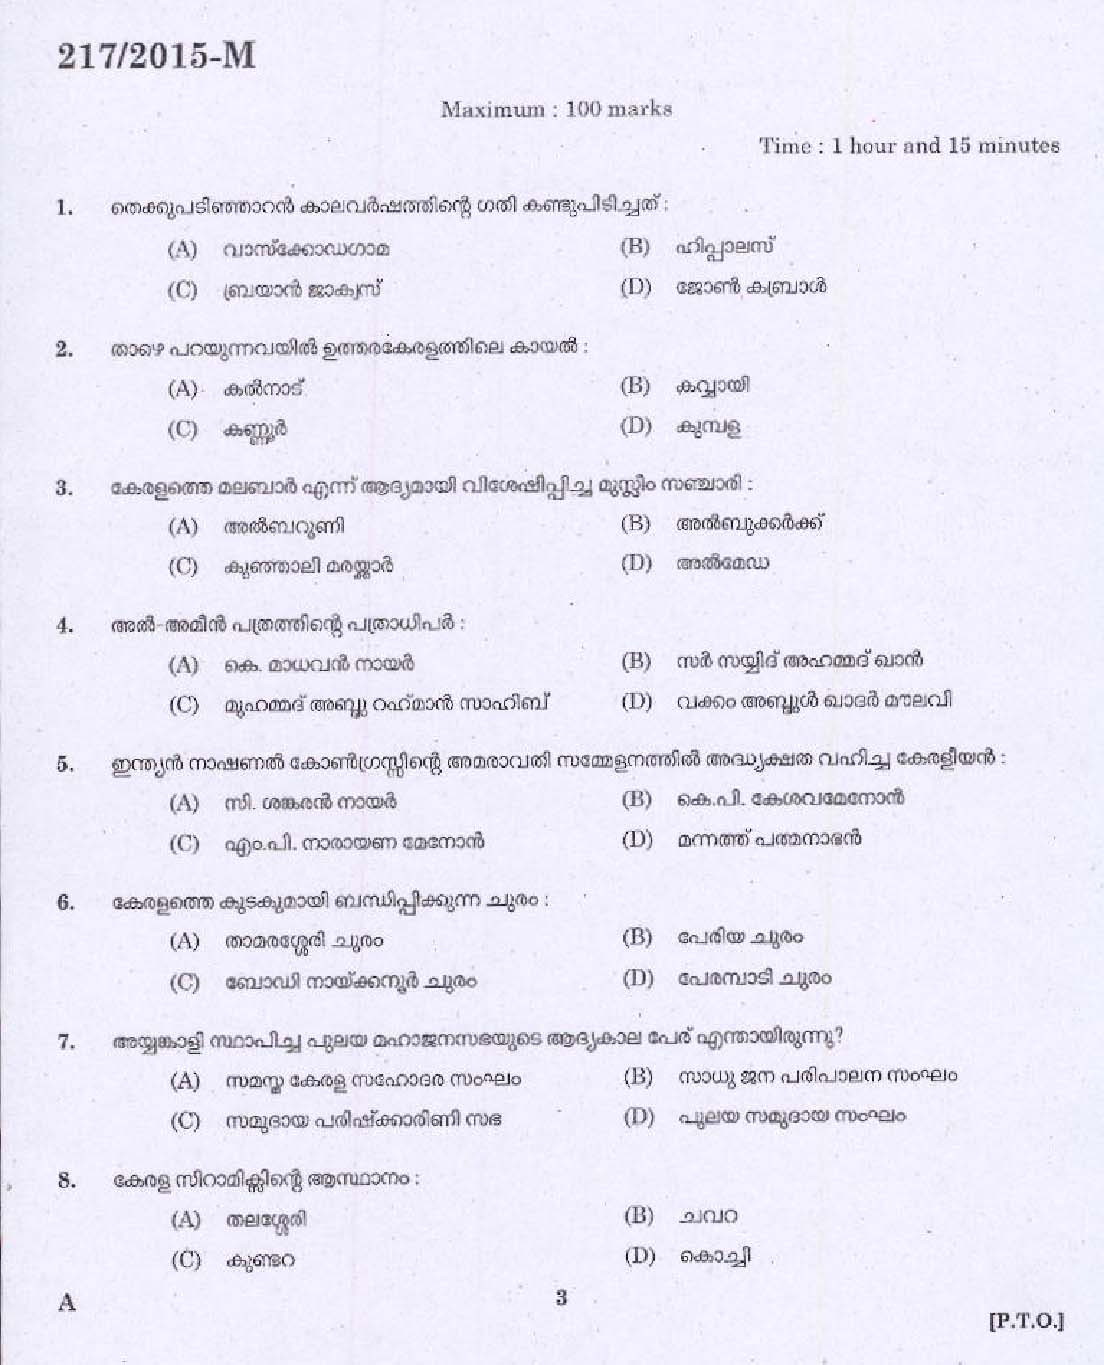 KPSC Matron Grade I Exam 2015 Code 2172015 M 1